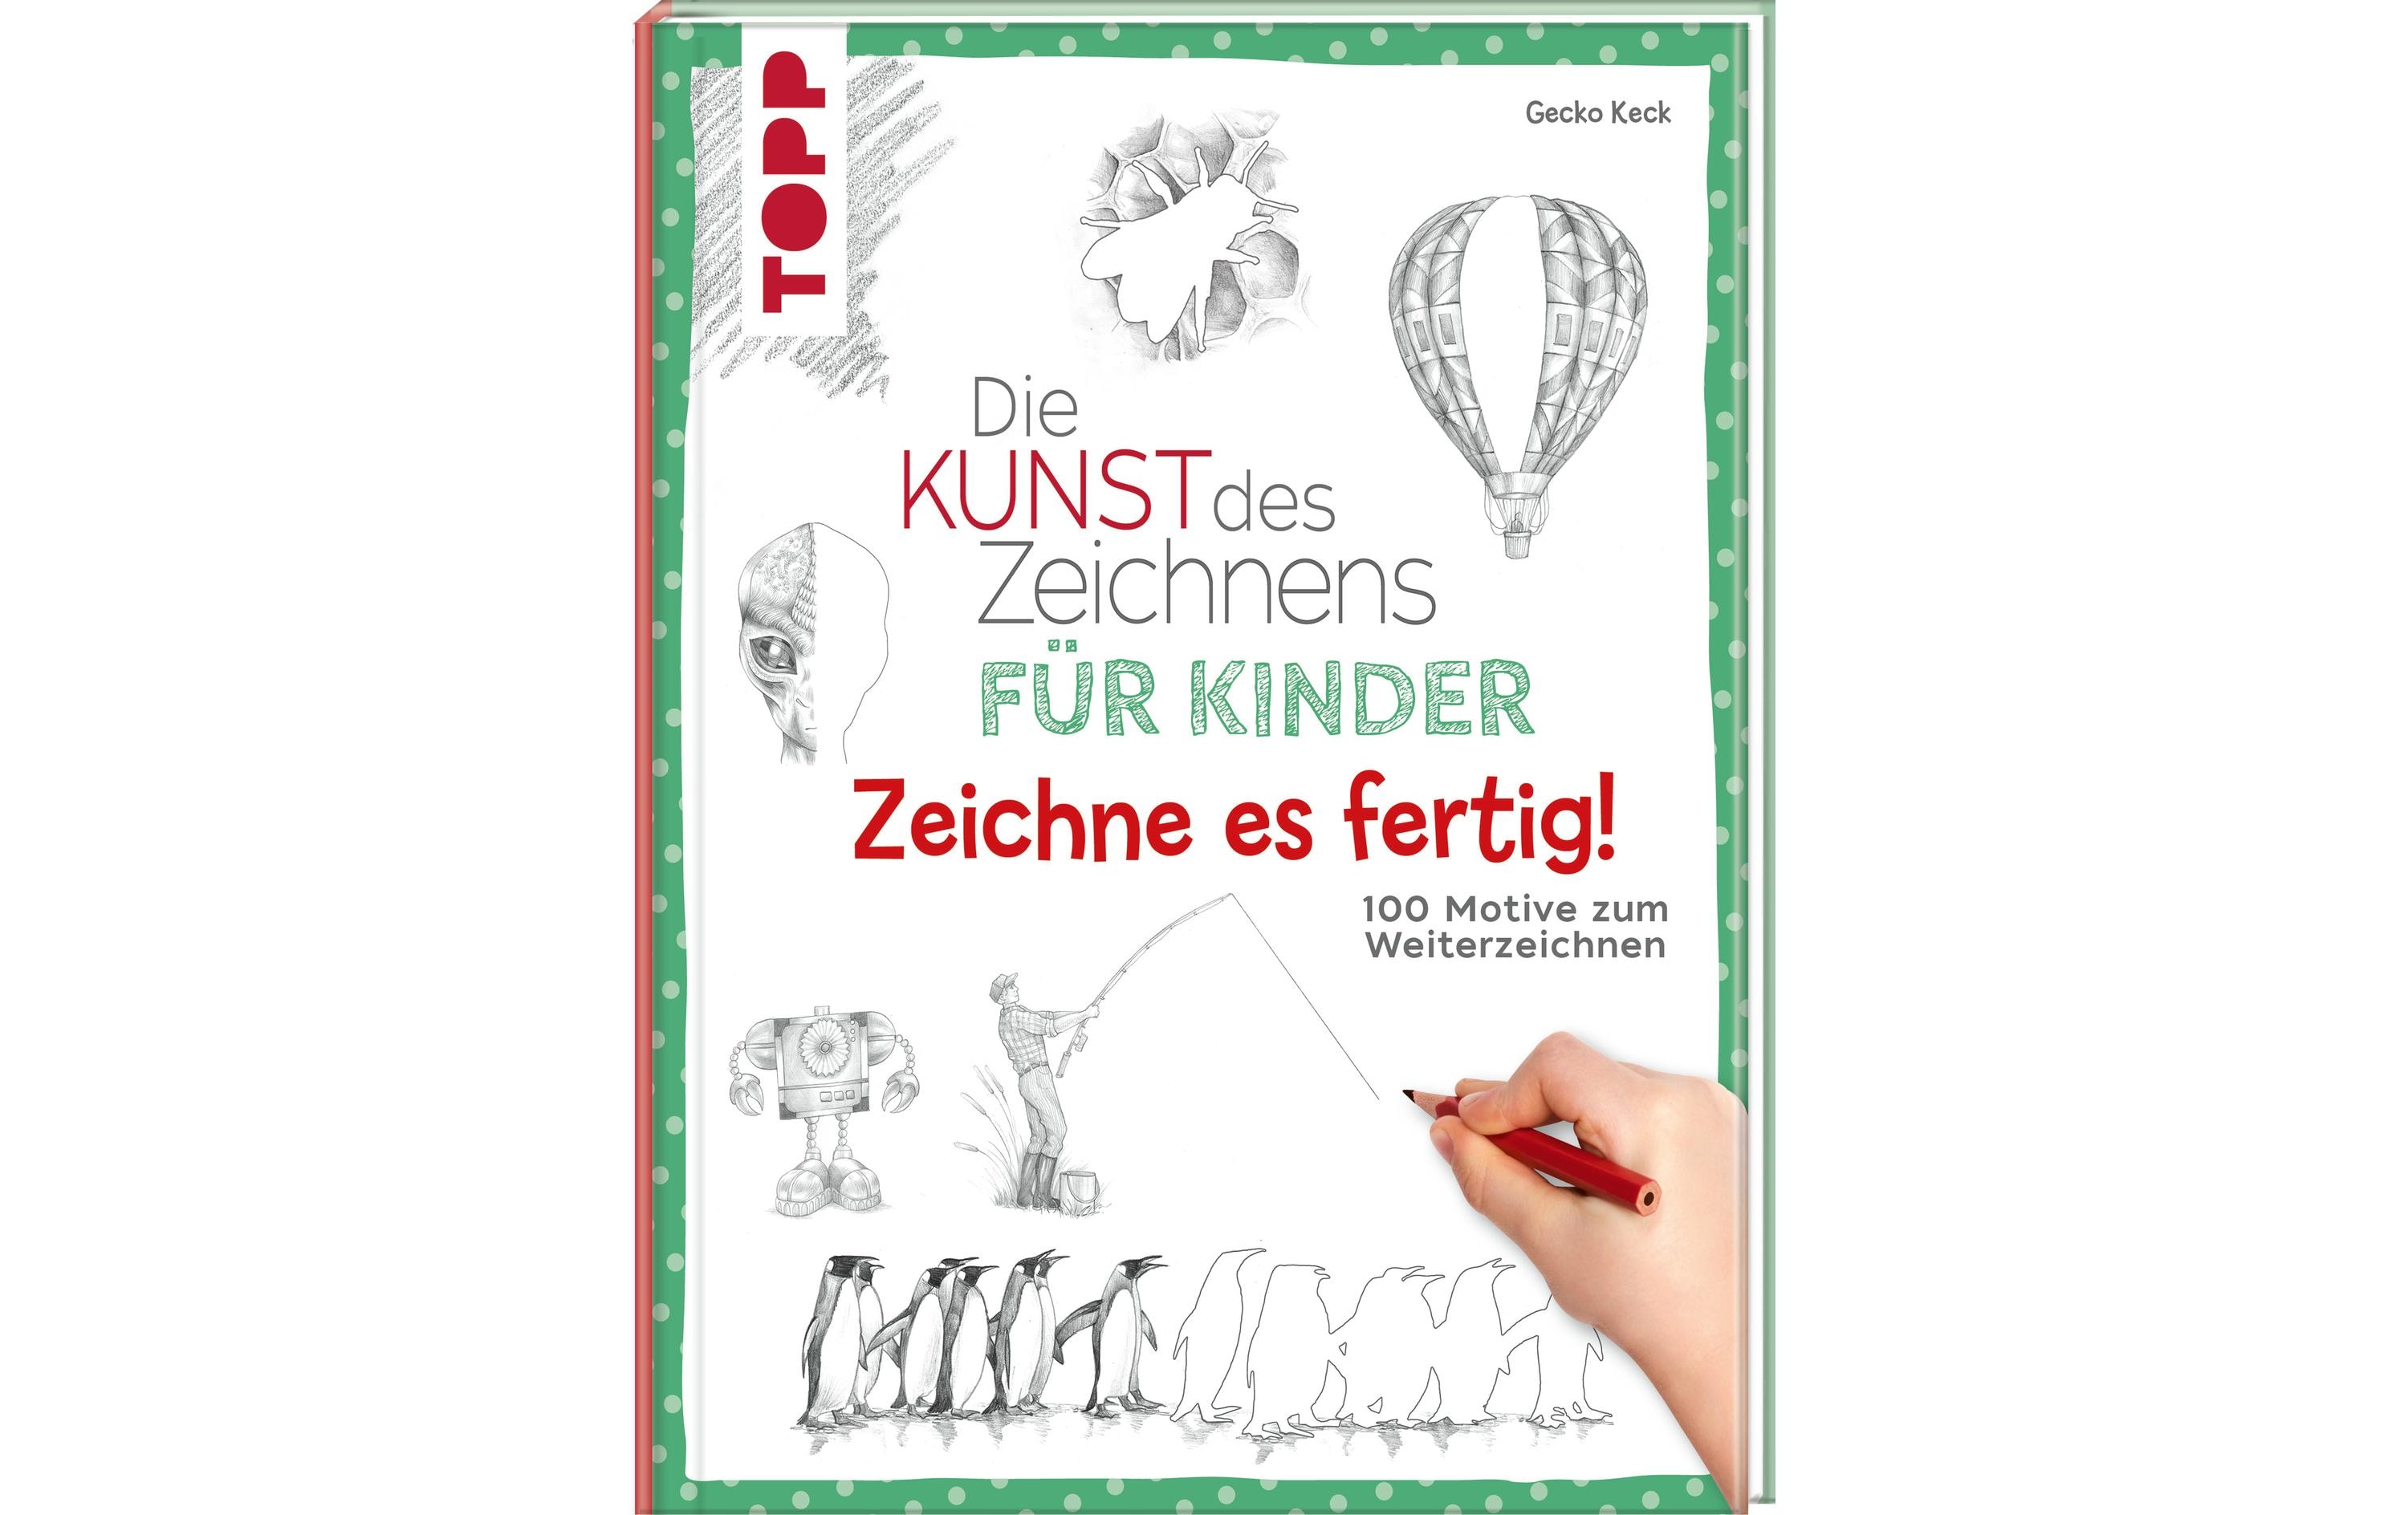 Frechverlag Handbuch Die Kunst des Zeichnens für Kinder 96 Seiten